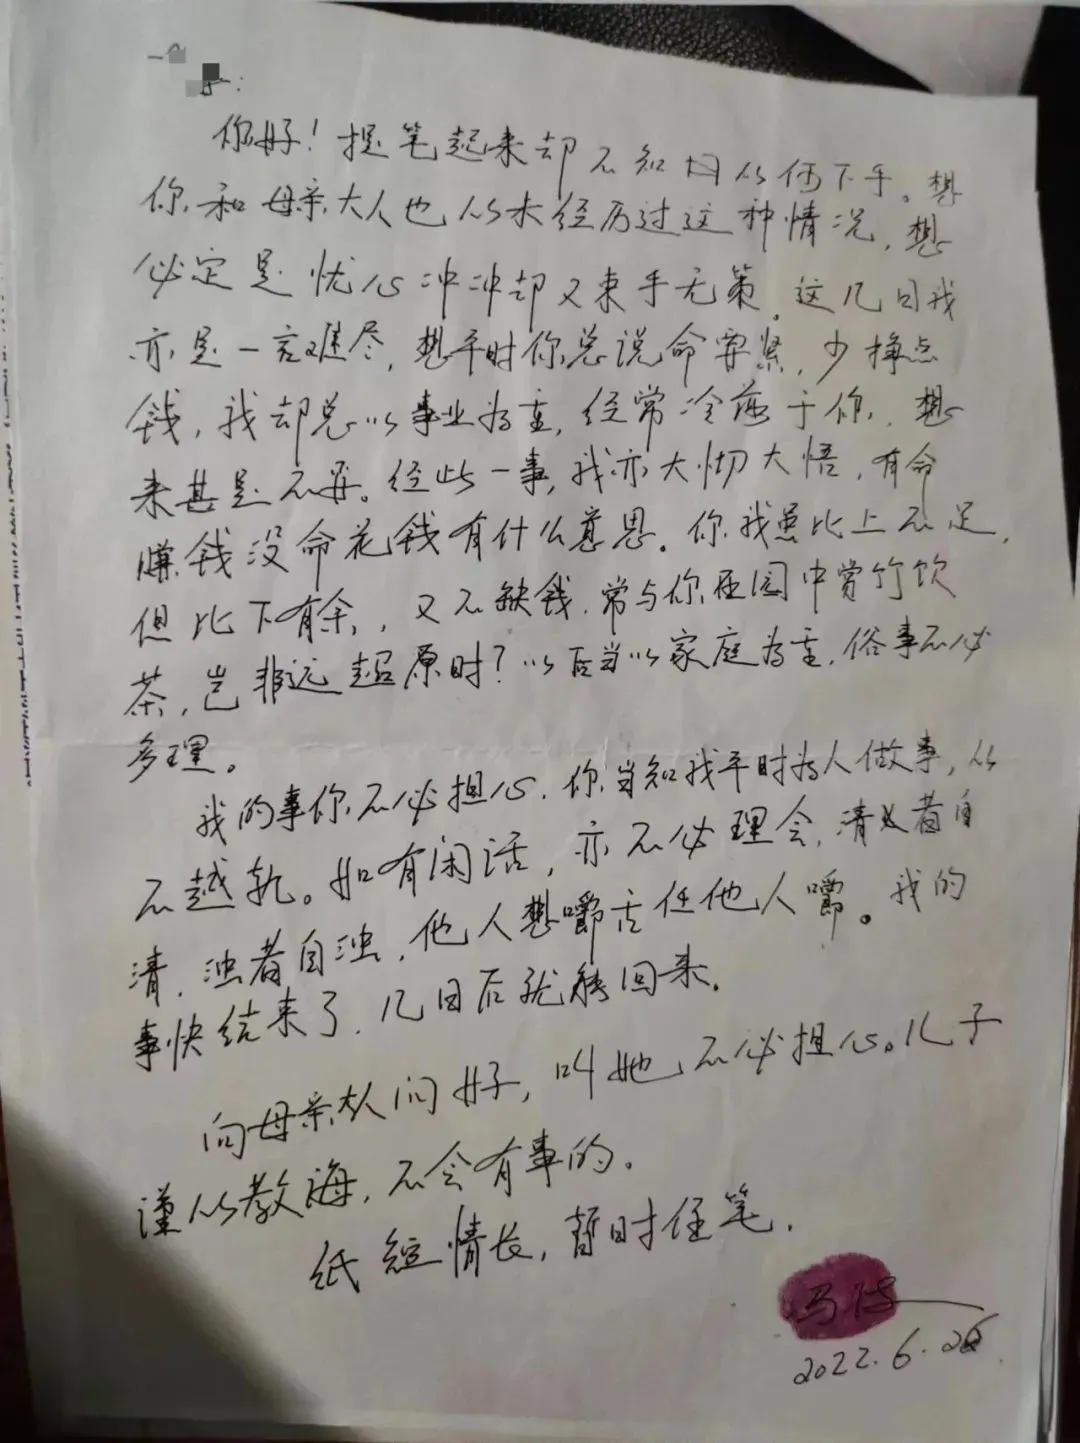 冯波被监视居住期间写给家人的信